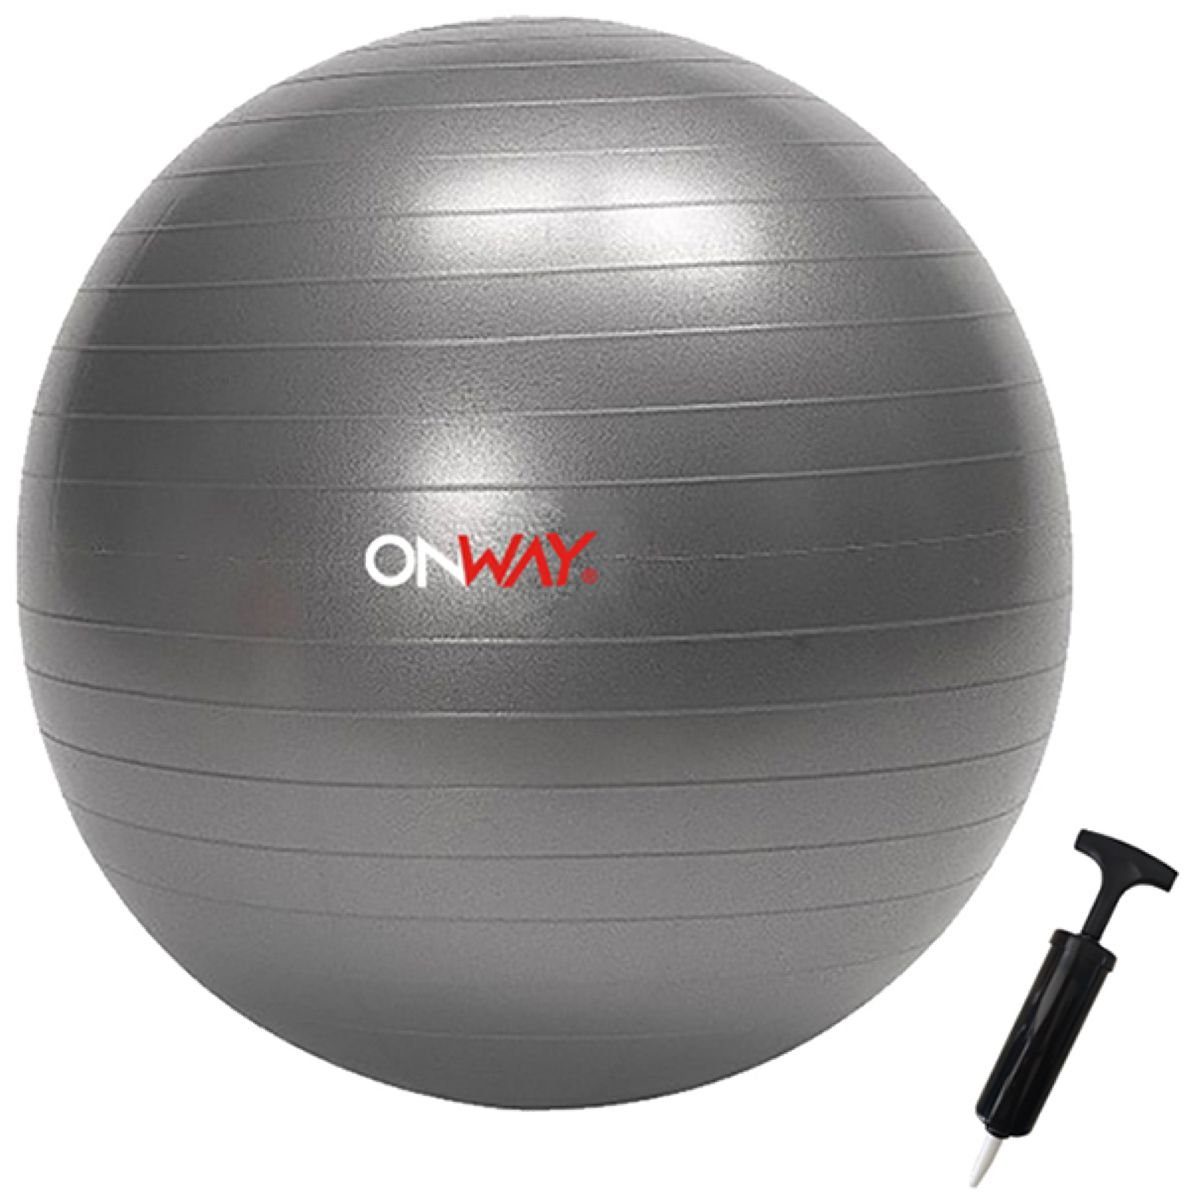 OnWay Gymnastikball OnWay Gymnastikball mit Pumpe Fitnessball 55cm oder 65 cm grau zur Auswahl, Durchmesser 55 oder 65cm zur Auswahl | Sportbälle